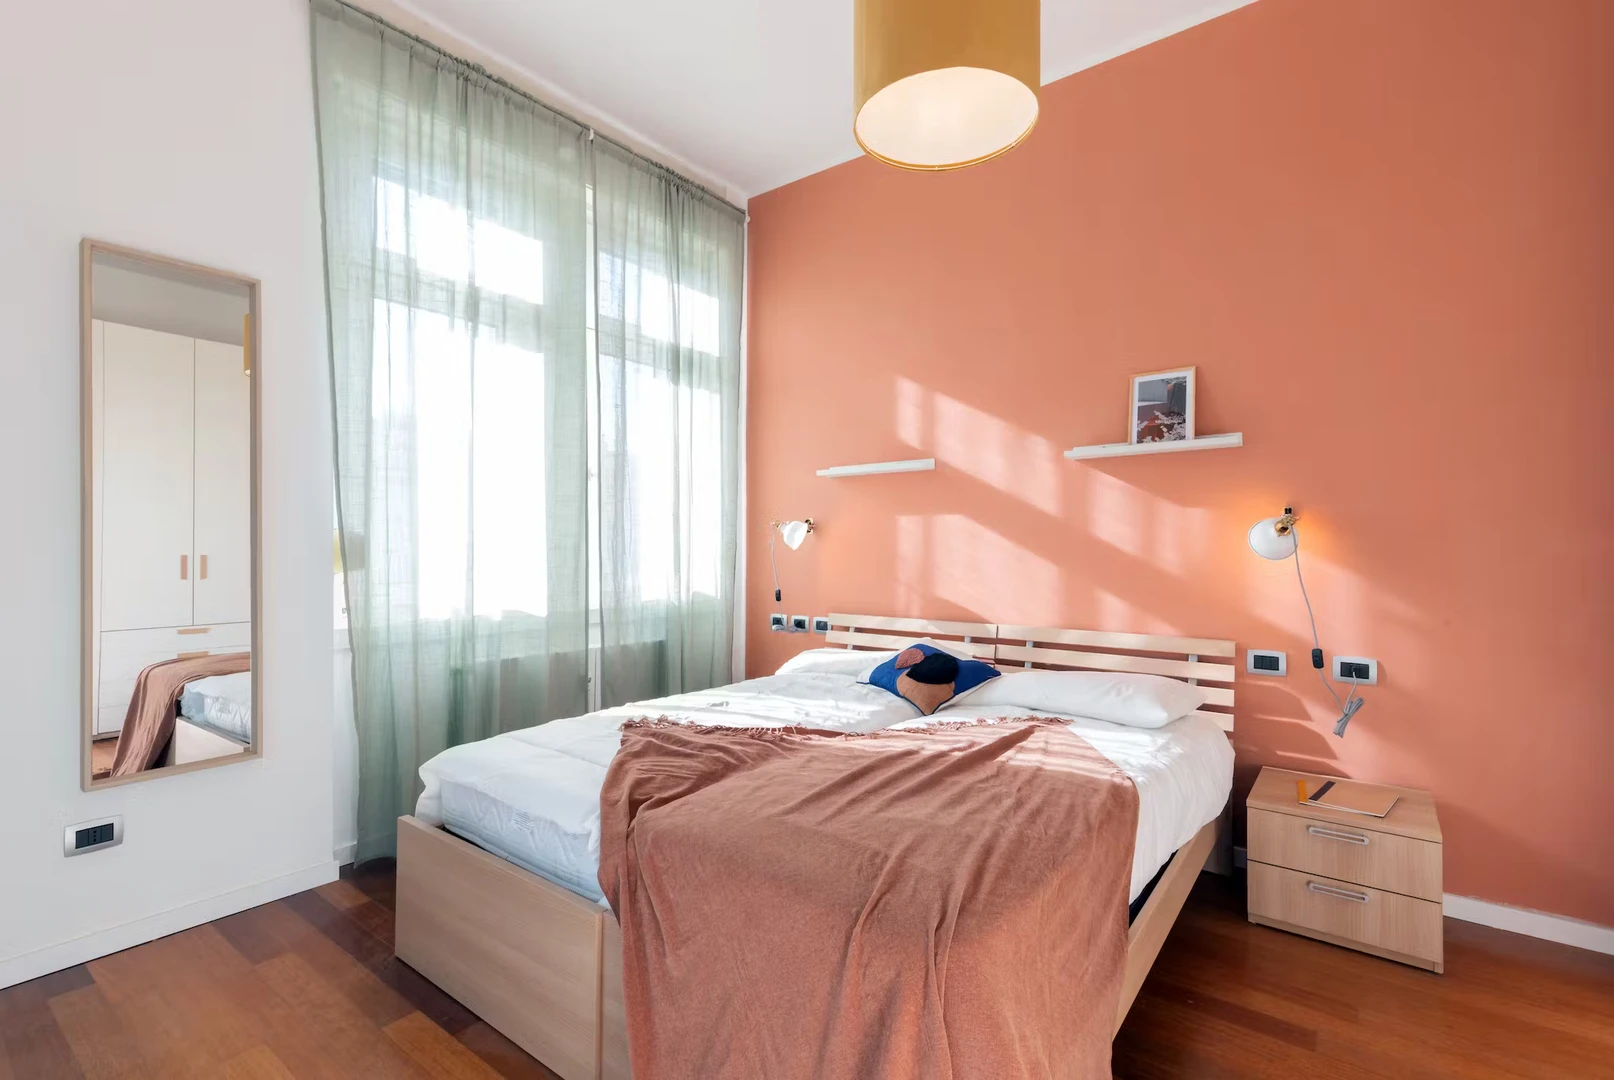 Apartamento moderno y luminoso en Trieste